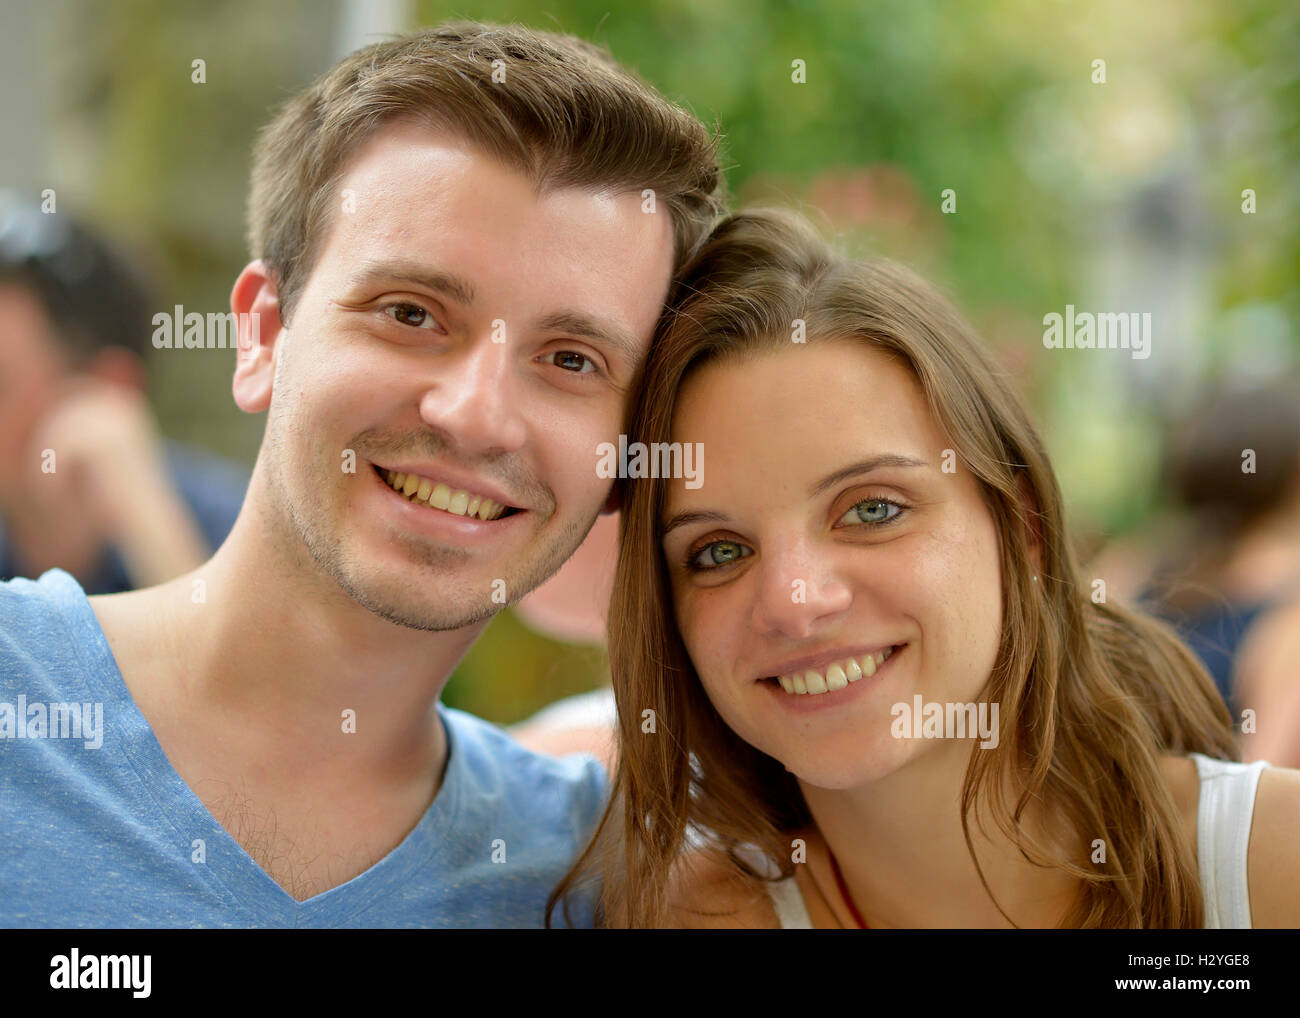 Jeune couple, se penchant ensemble, portrait, Allemagne Banque D'Images